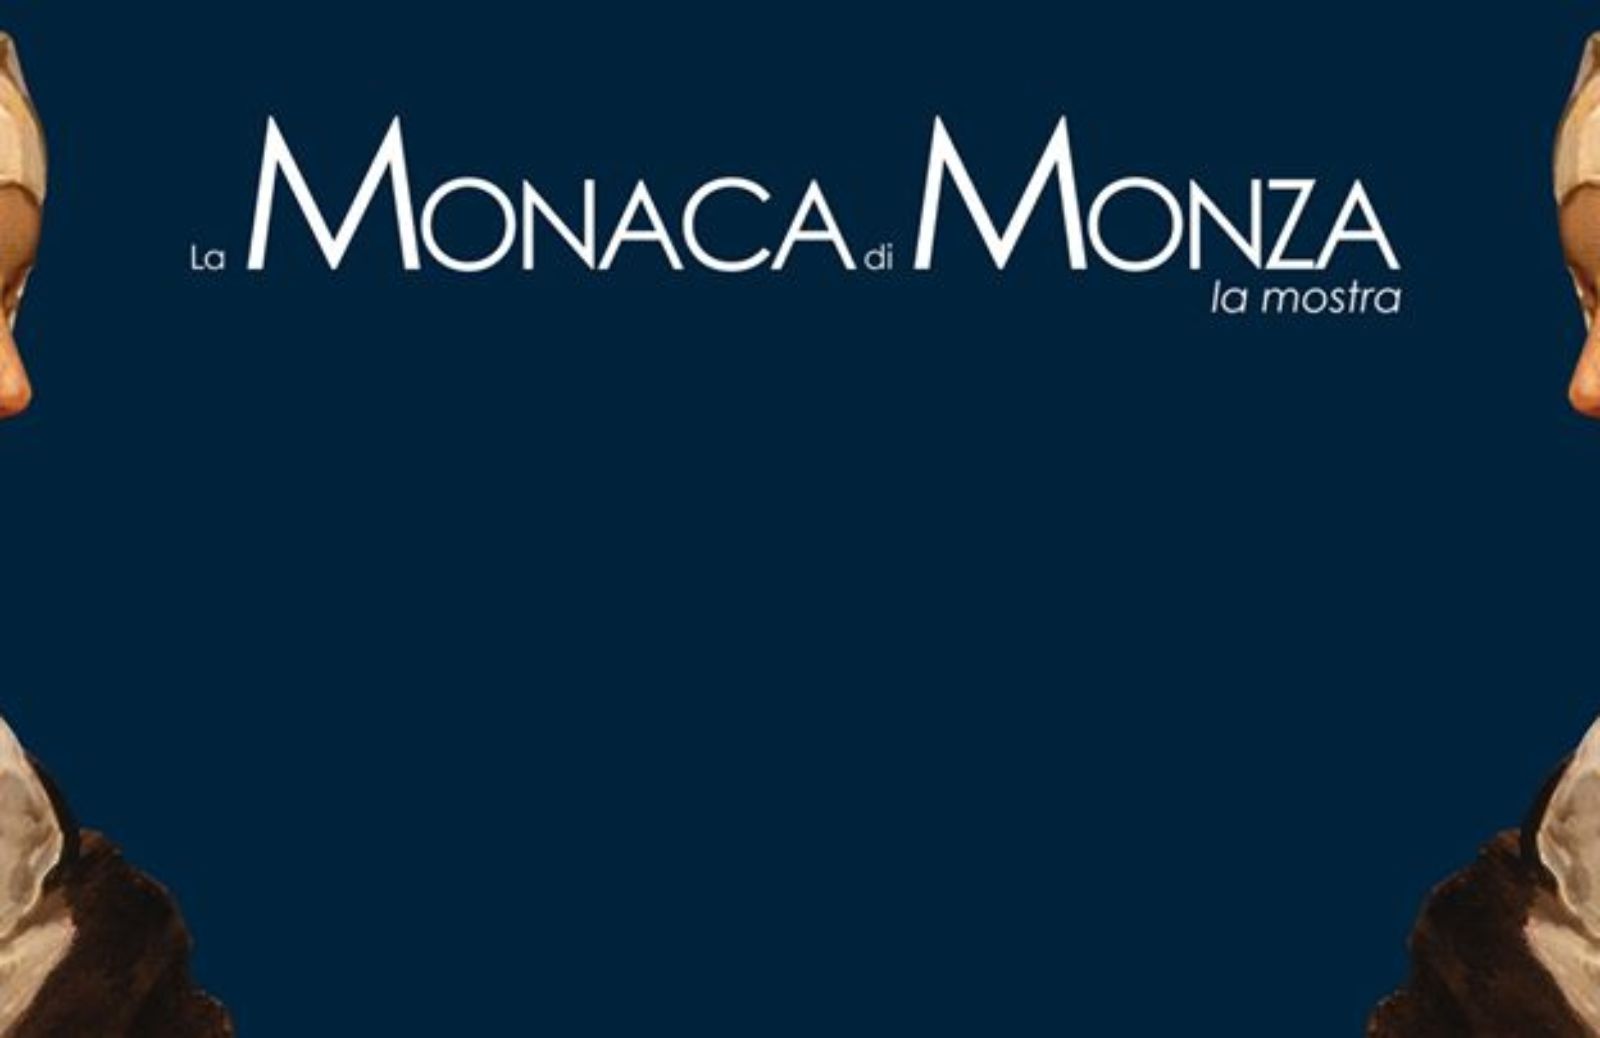 In autunno la mostra sulla Monaca di Monza